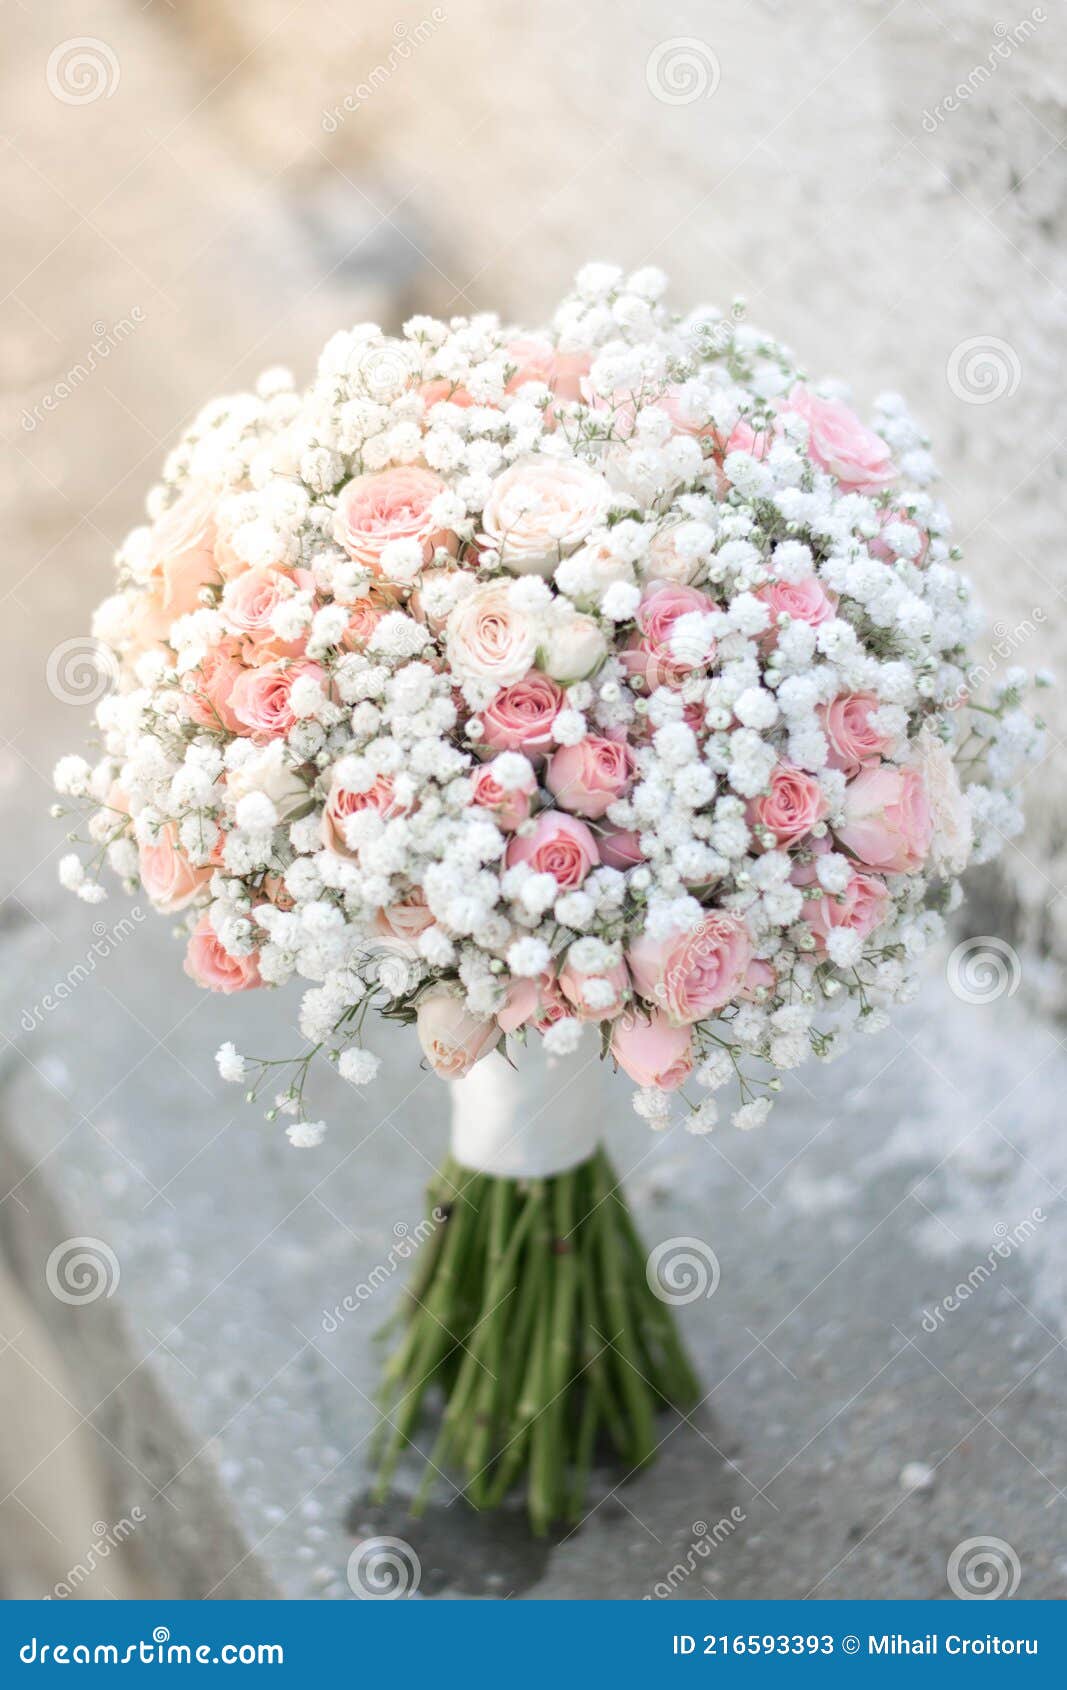 Buquê De Noiva. Um Simples Buquê De Girassol-cigana E Rosas-rosadas. Bouquet  De Casamento Branco E Rosa. Imagem de Stock - Imagem de mola, romance:  216593393